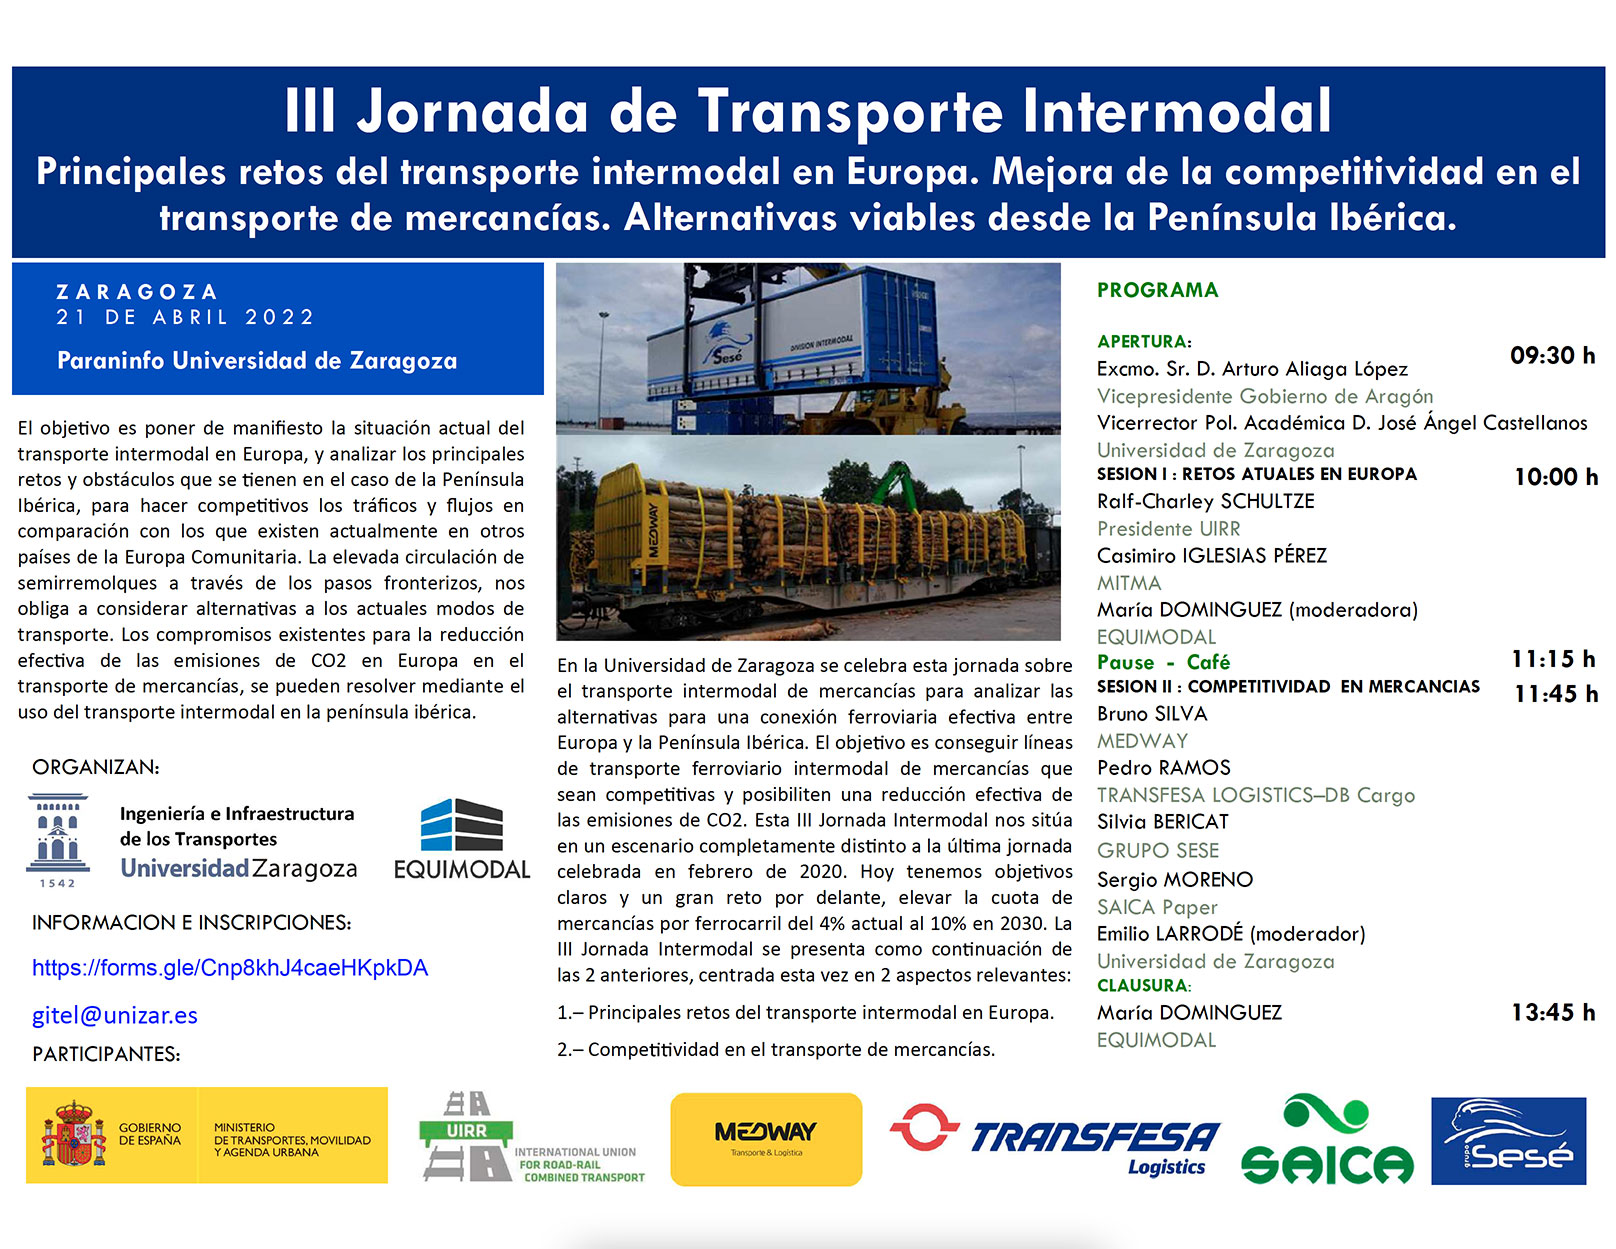 La Universidad de Zaragoza y Equimodal organizan una jornada sobre transporte intermodal